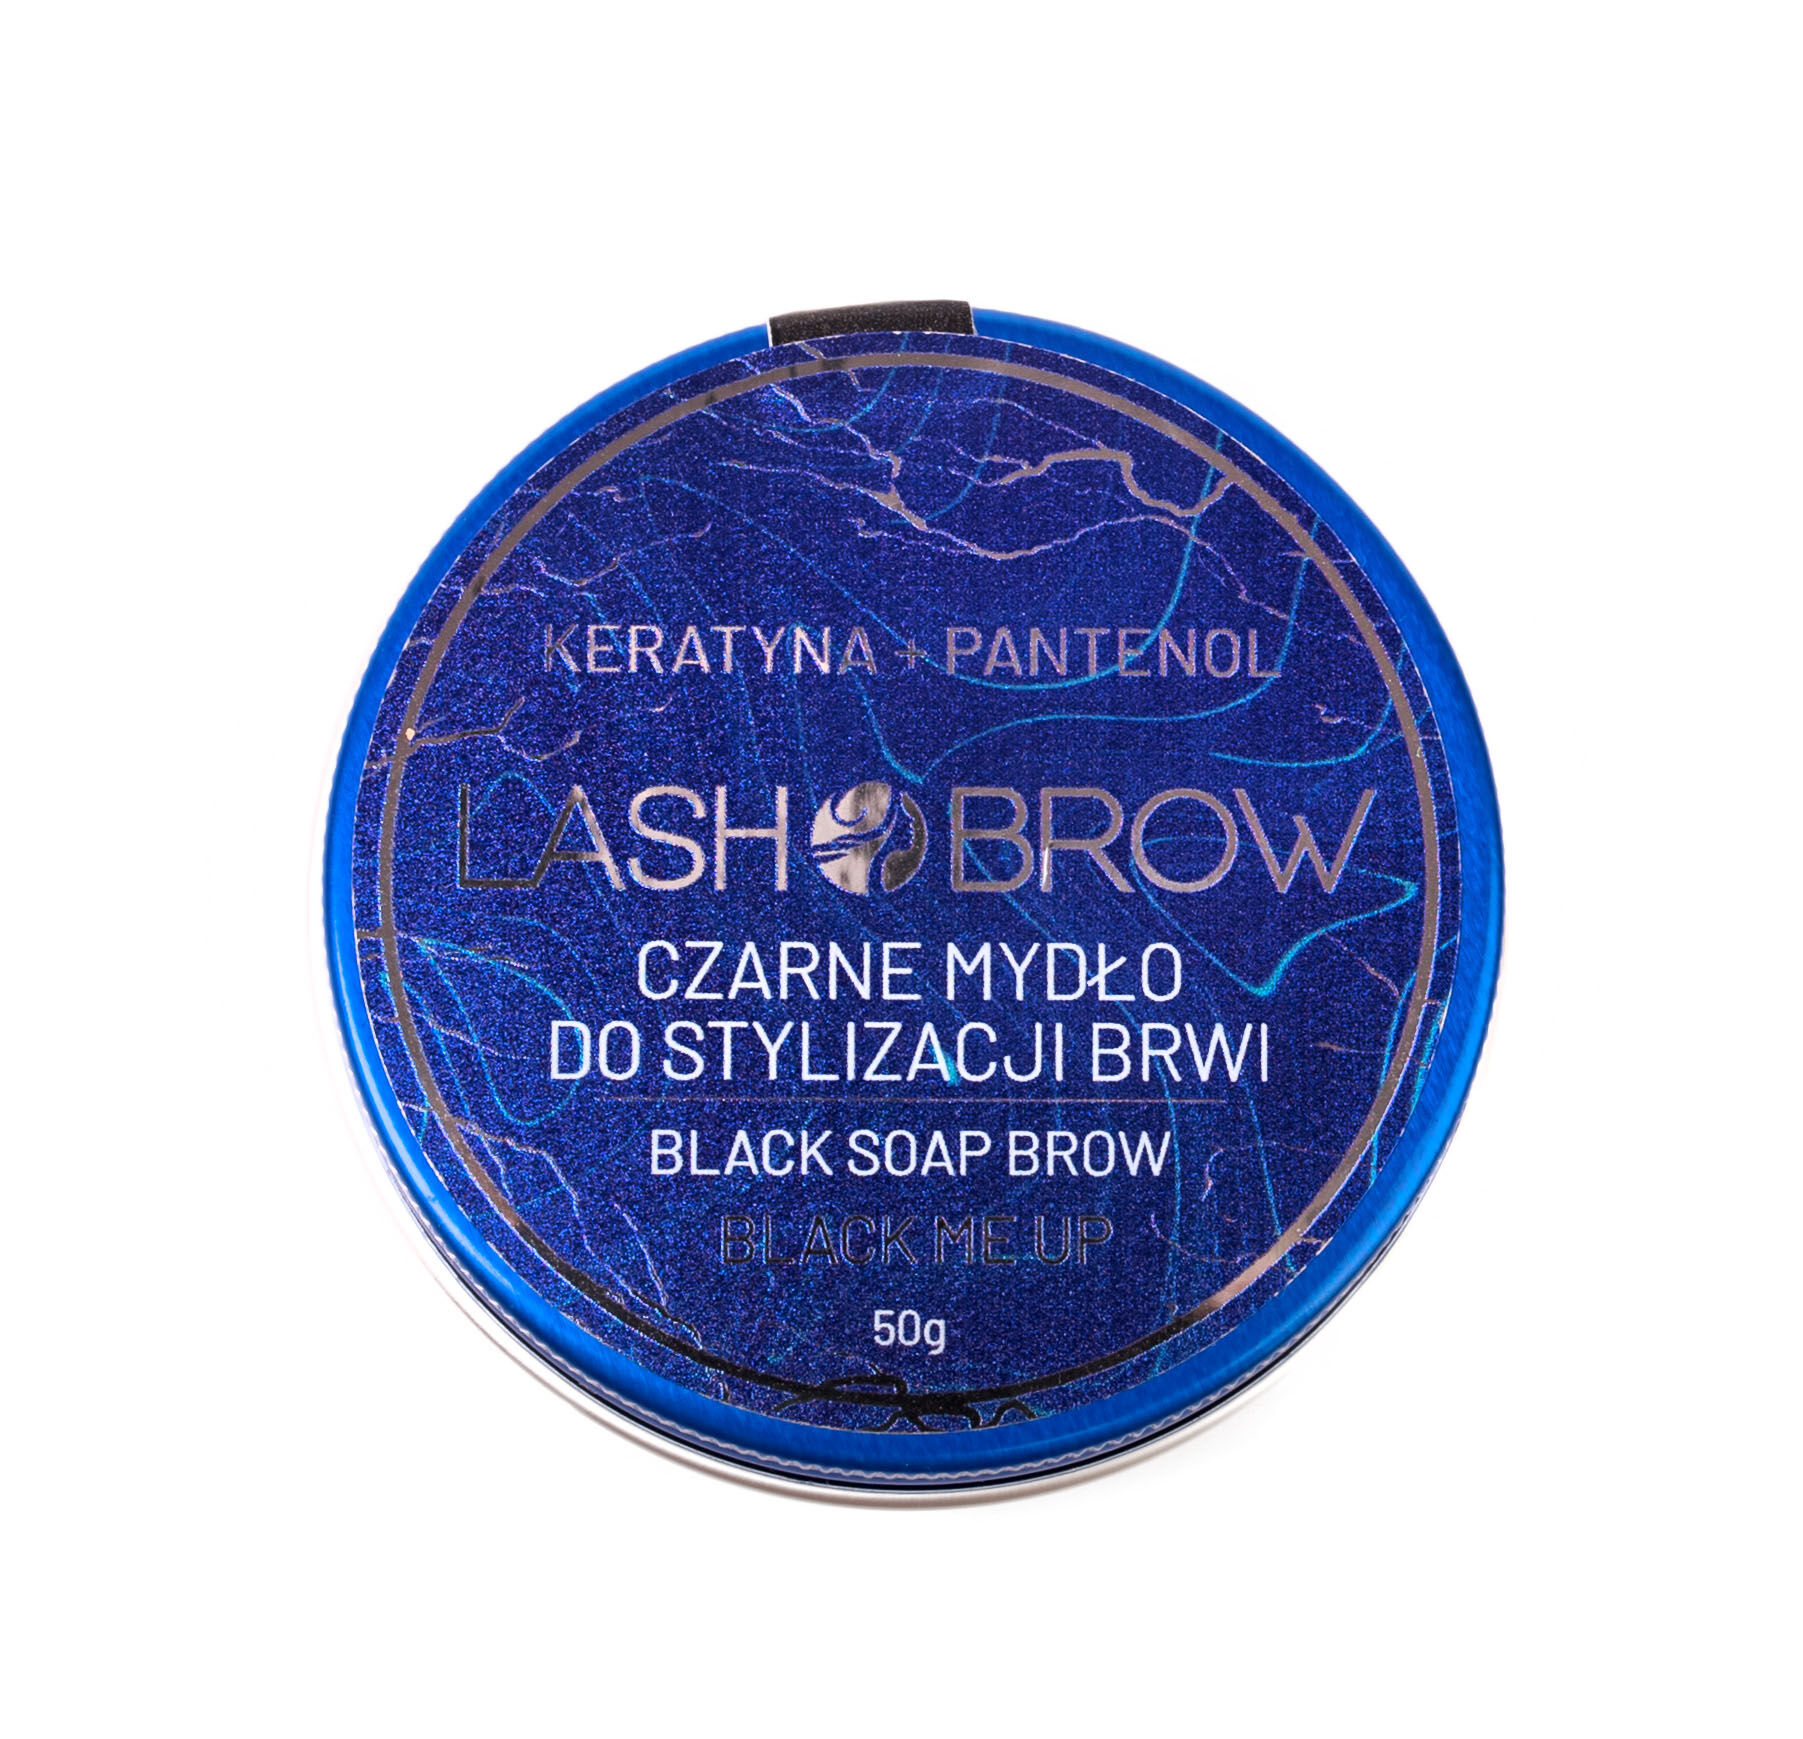 Черное мыло для укладки бровей Lash Brow, 50 гр